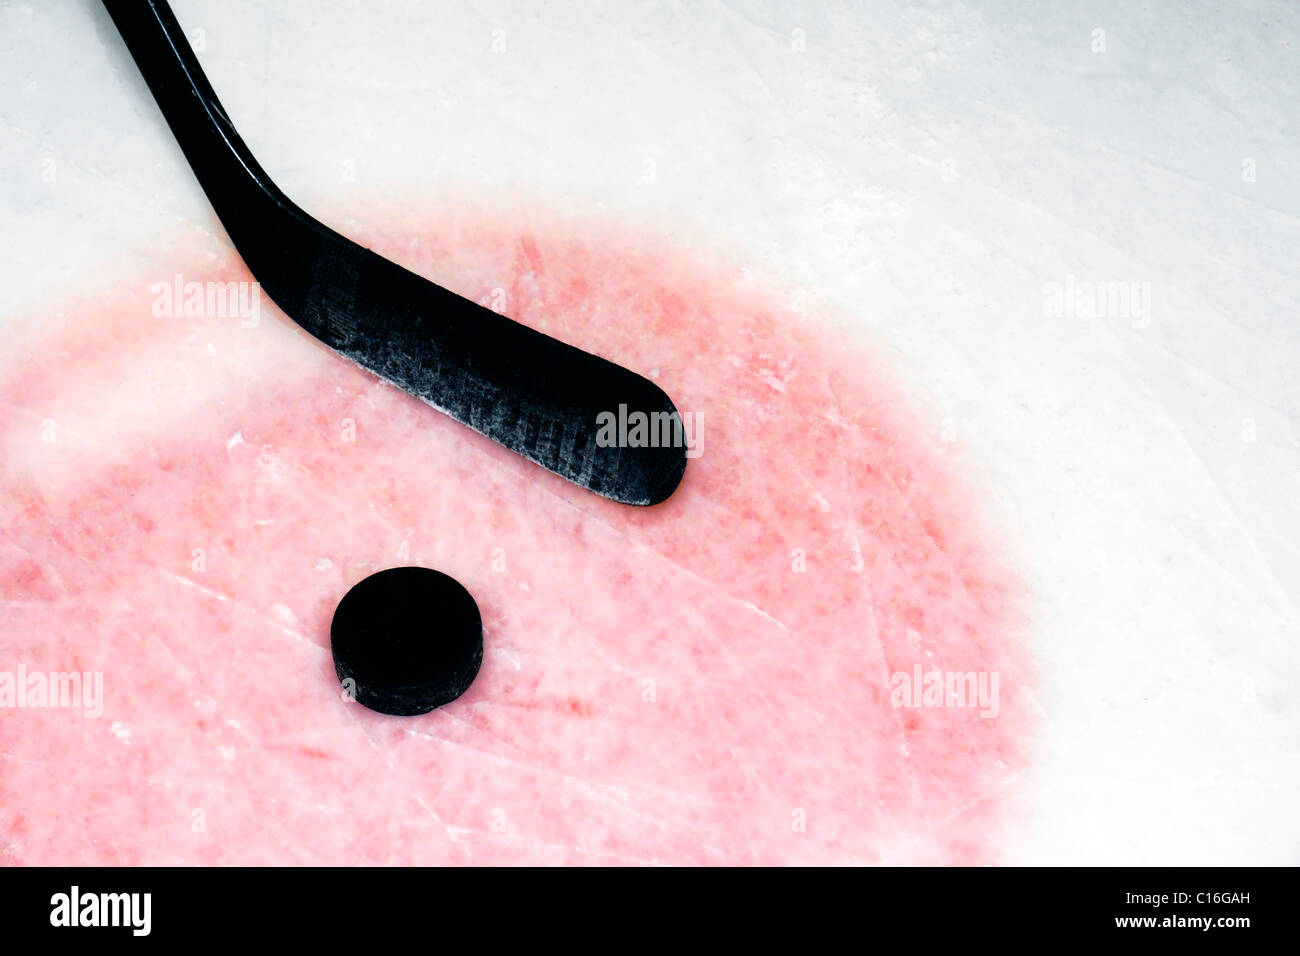 Antecedentes: El deporte del Hockey Stick grafito y puck en real arena usado y rayado el hielo. Foto de stock